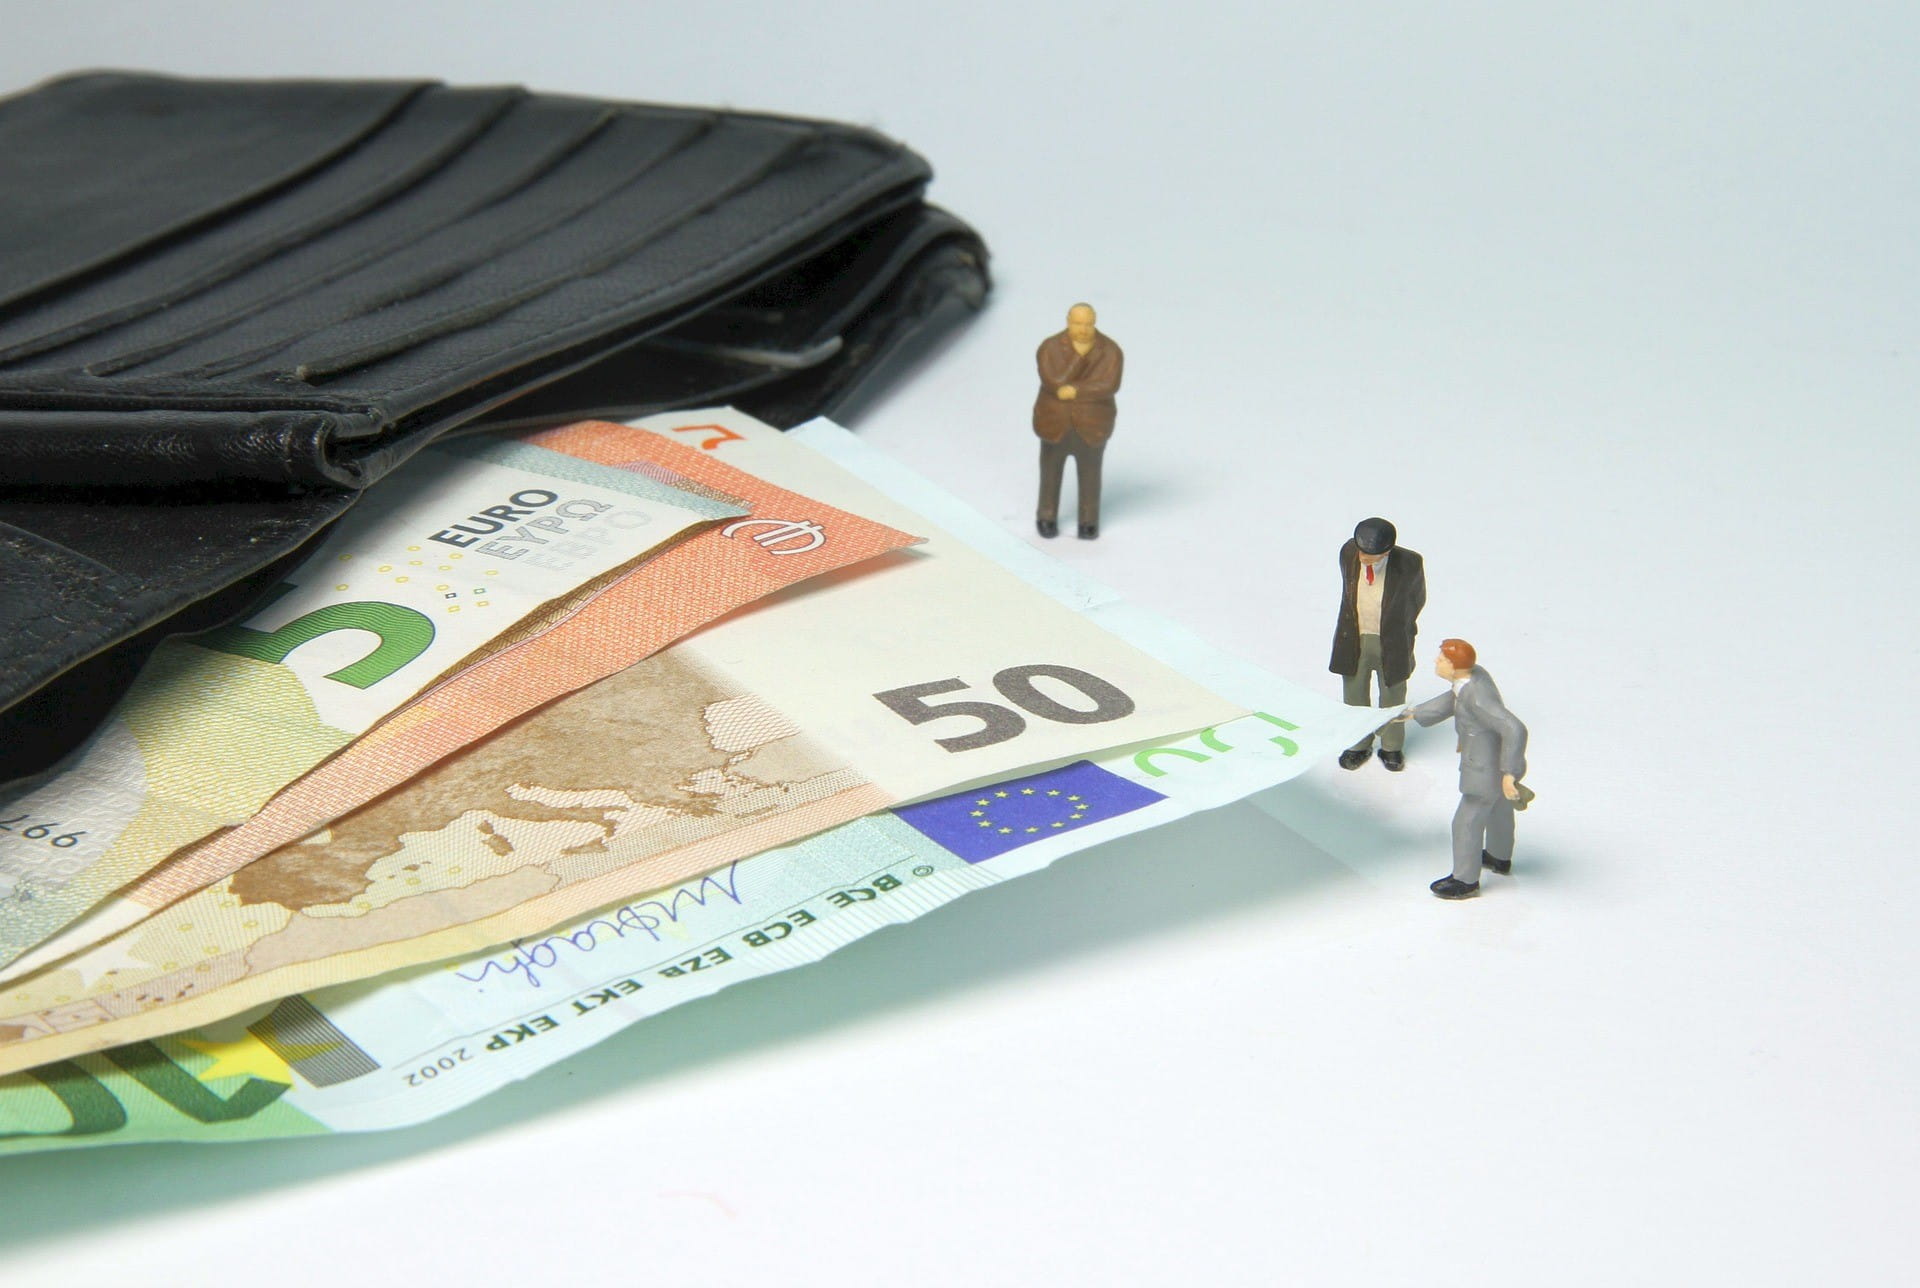 Tiga pria kecil berdiri di samping dompet terbuka dengan uang kertas euro.  Salah satunya menarik tagihan.